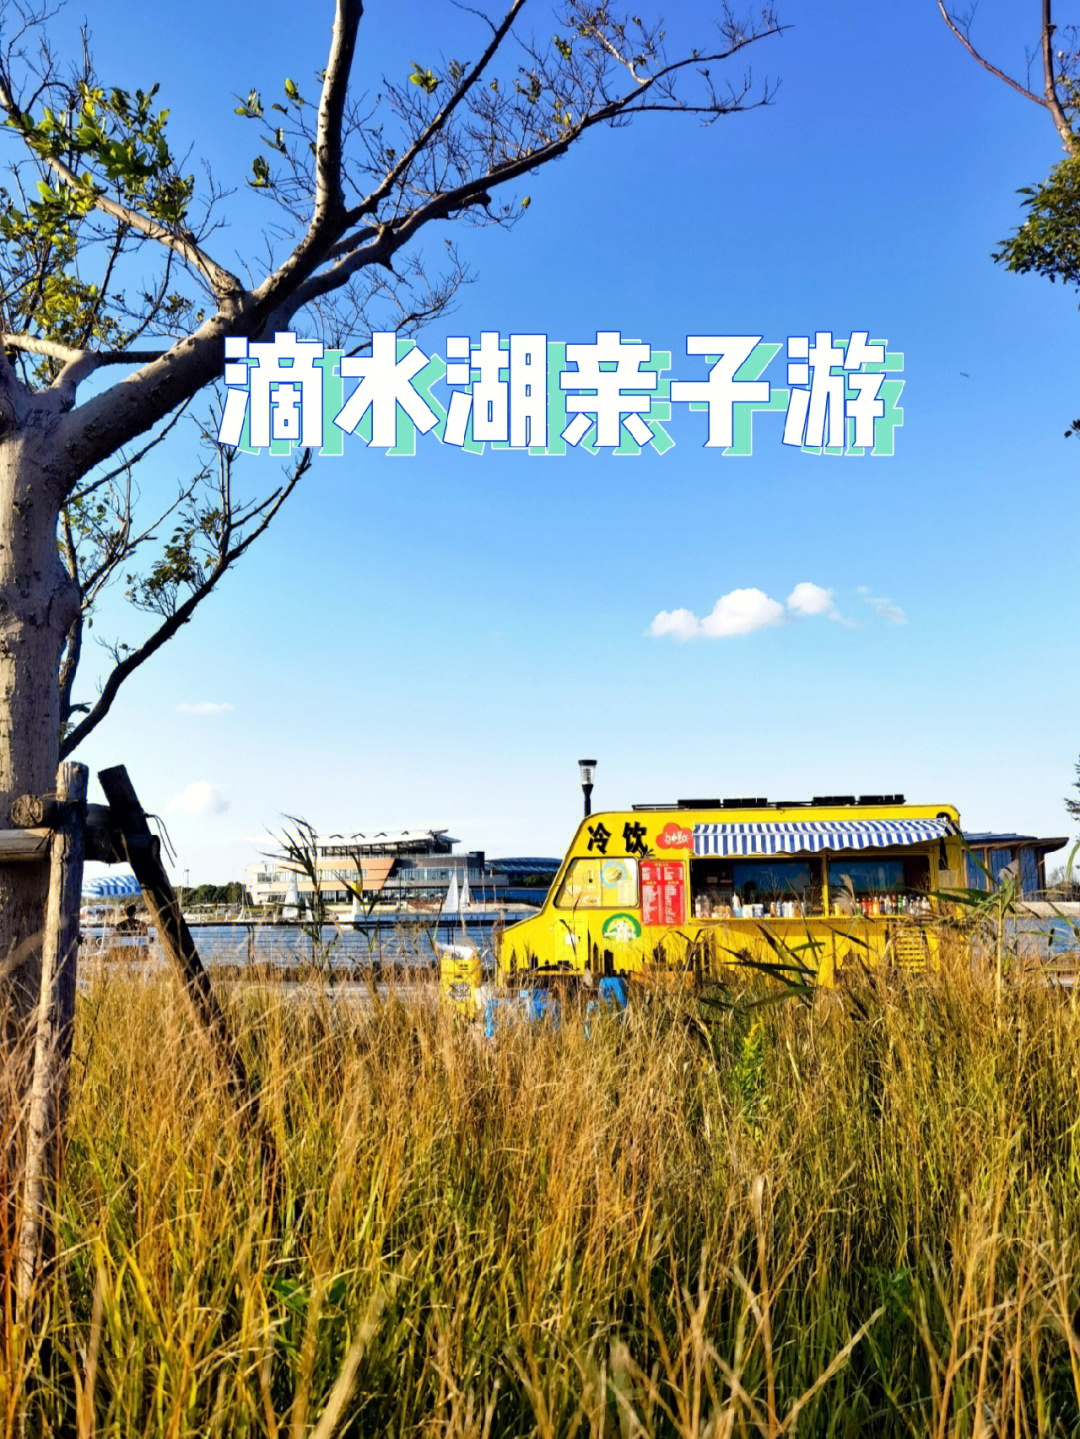 上海溜娃之滴水湖篇无动力乐园航海博物馆